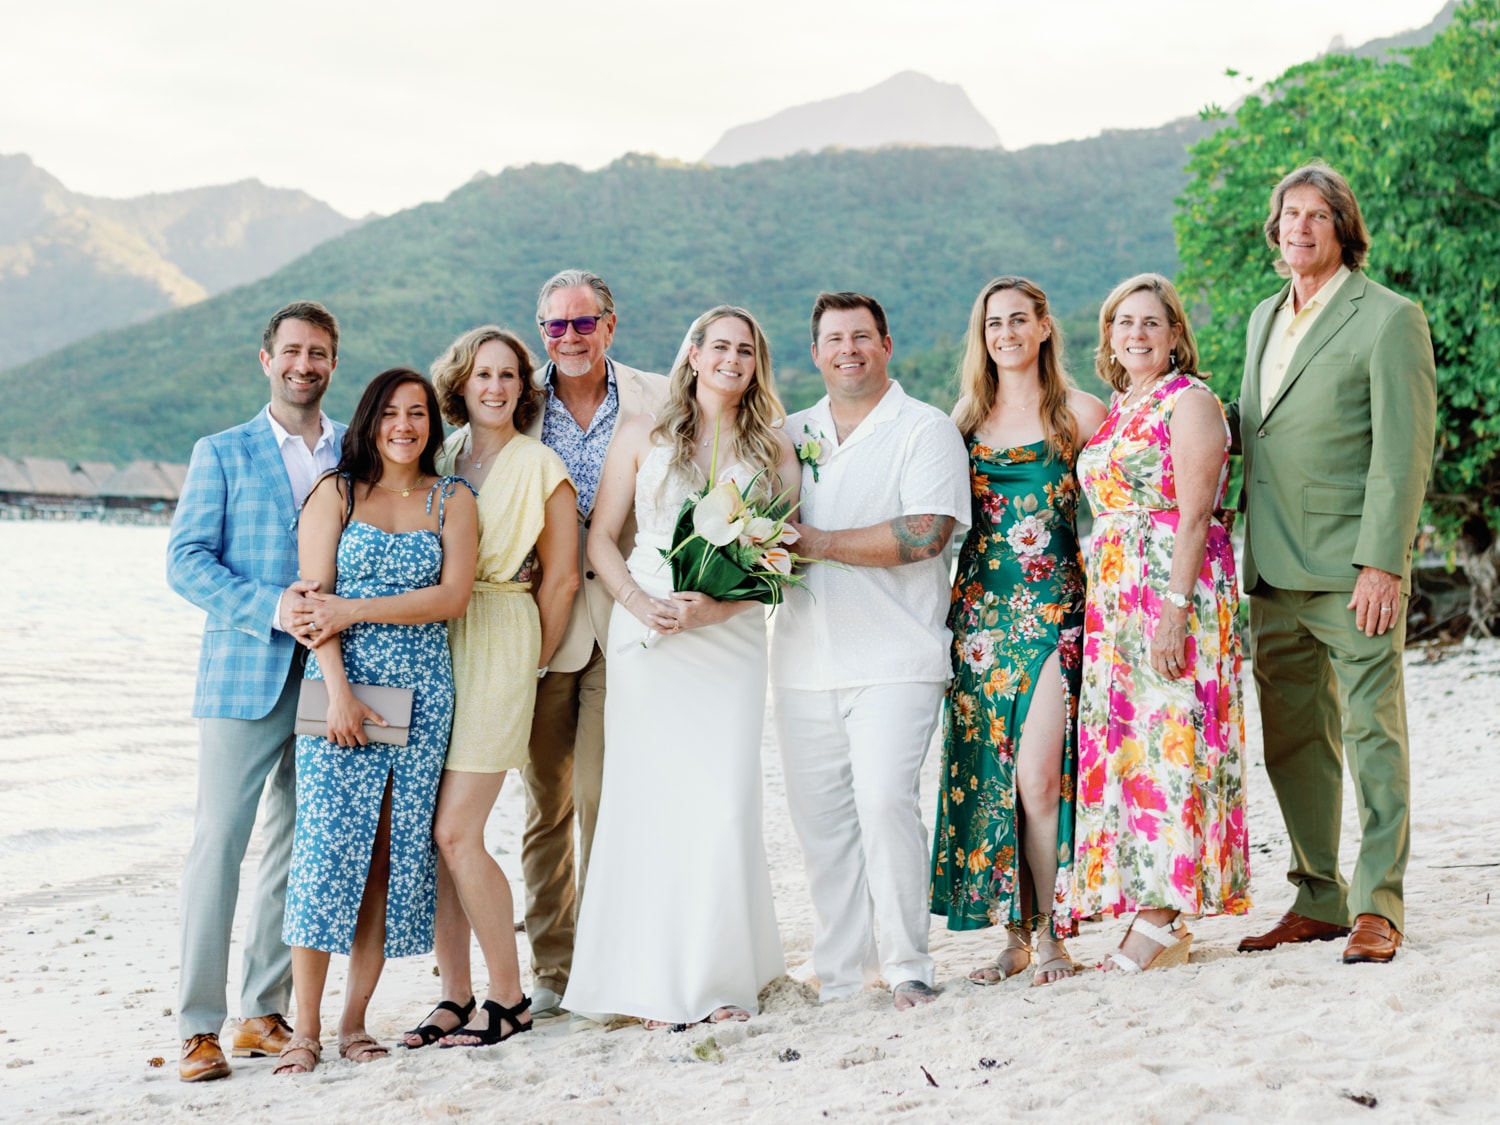 Temae Beach Wedding Group Photo guests bride groom